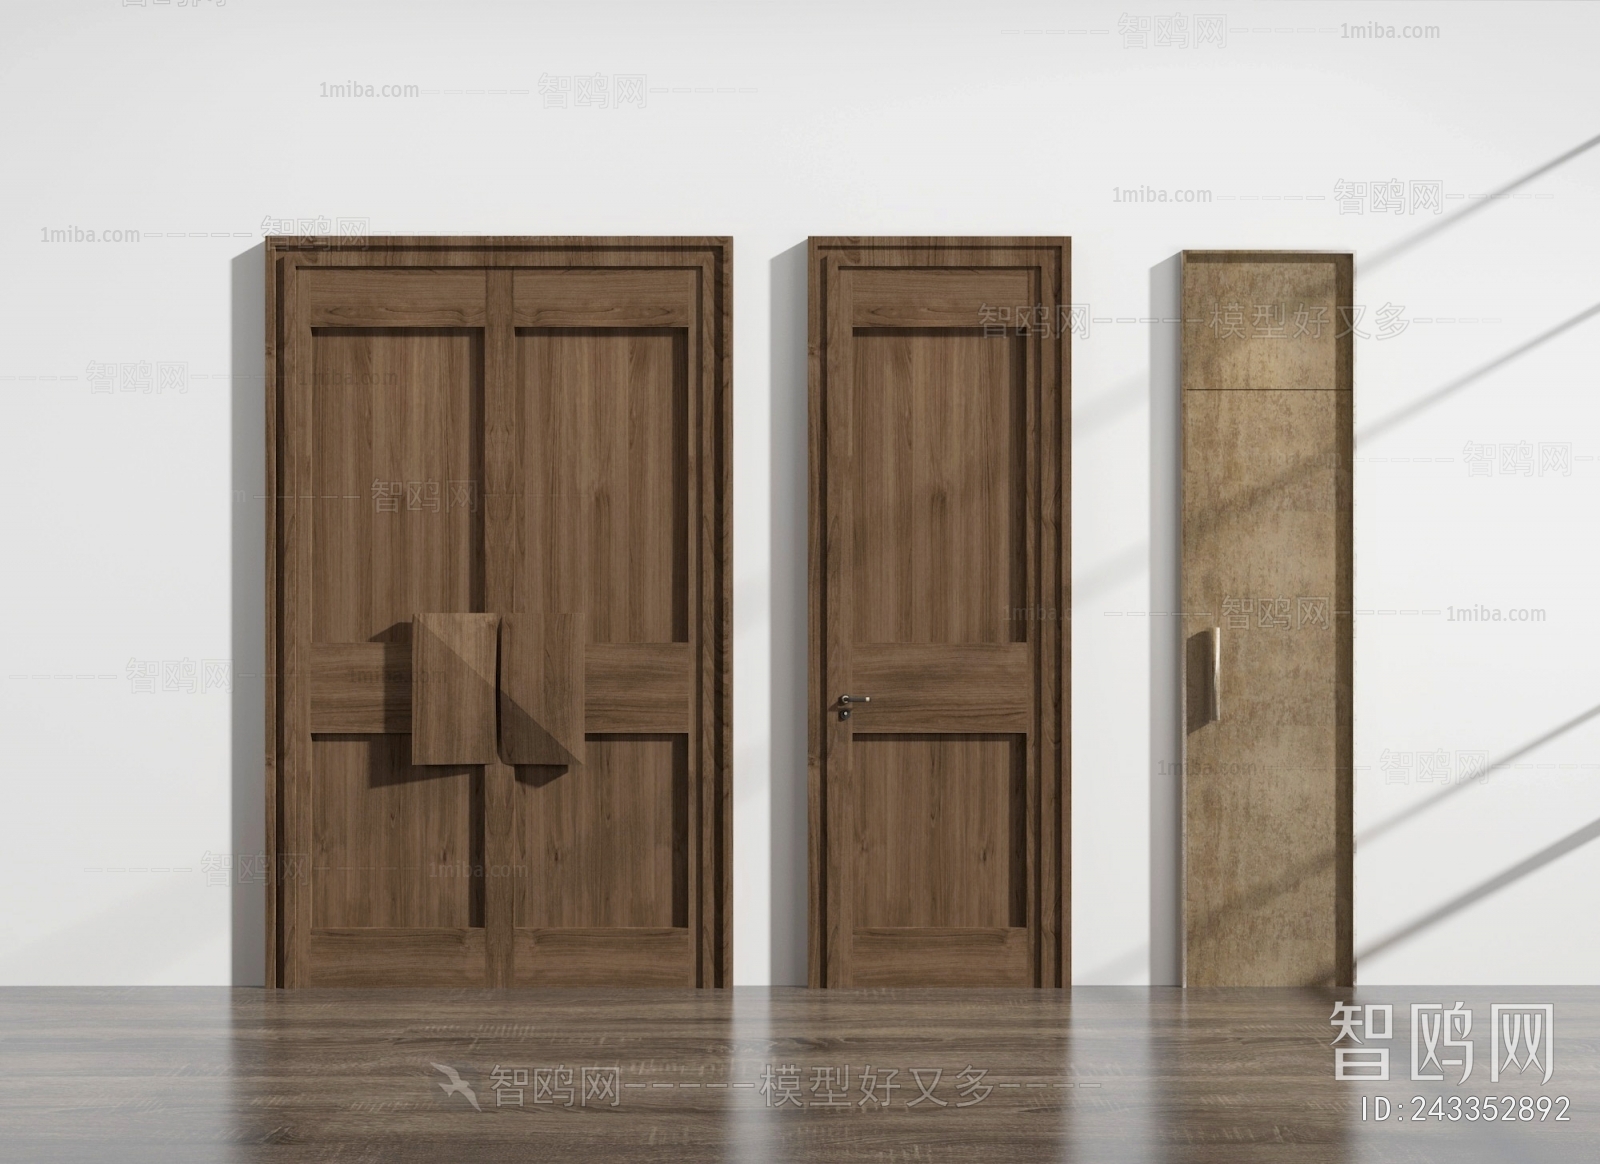 Industrial Style Solid Wood Door